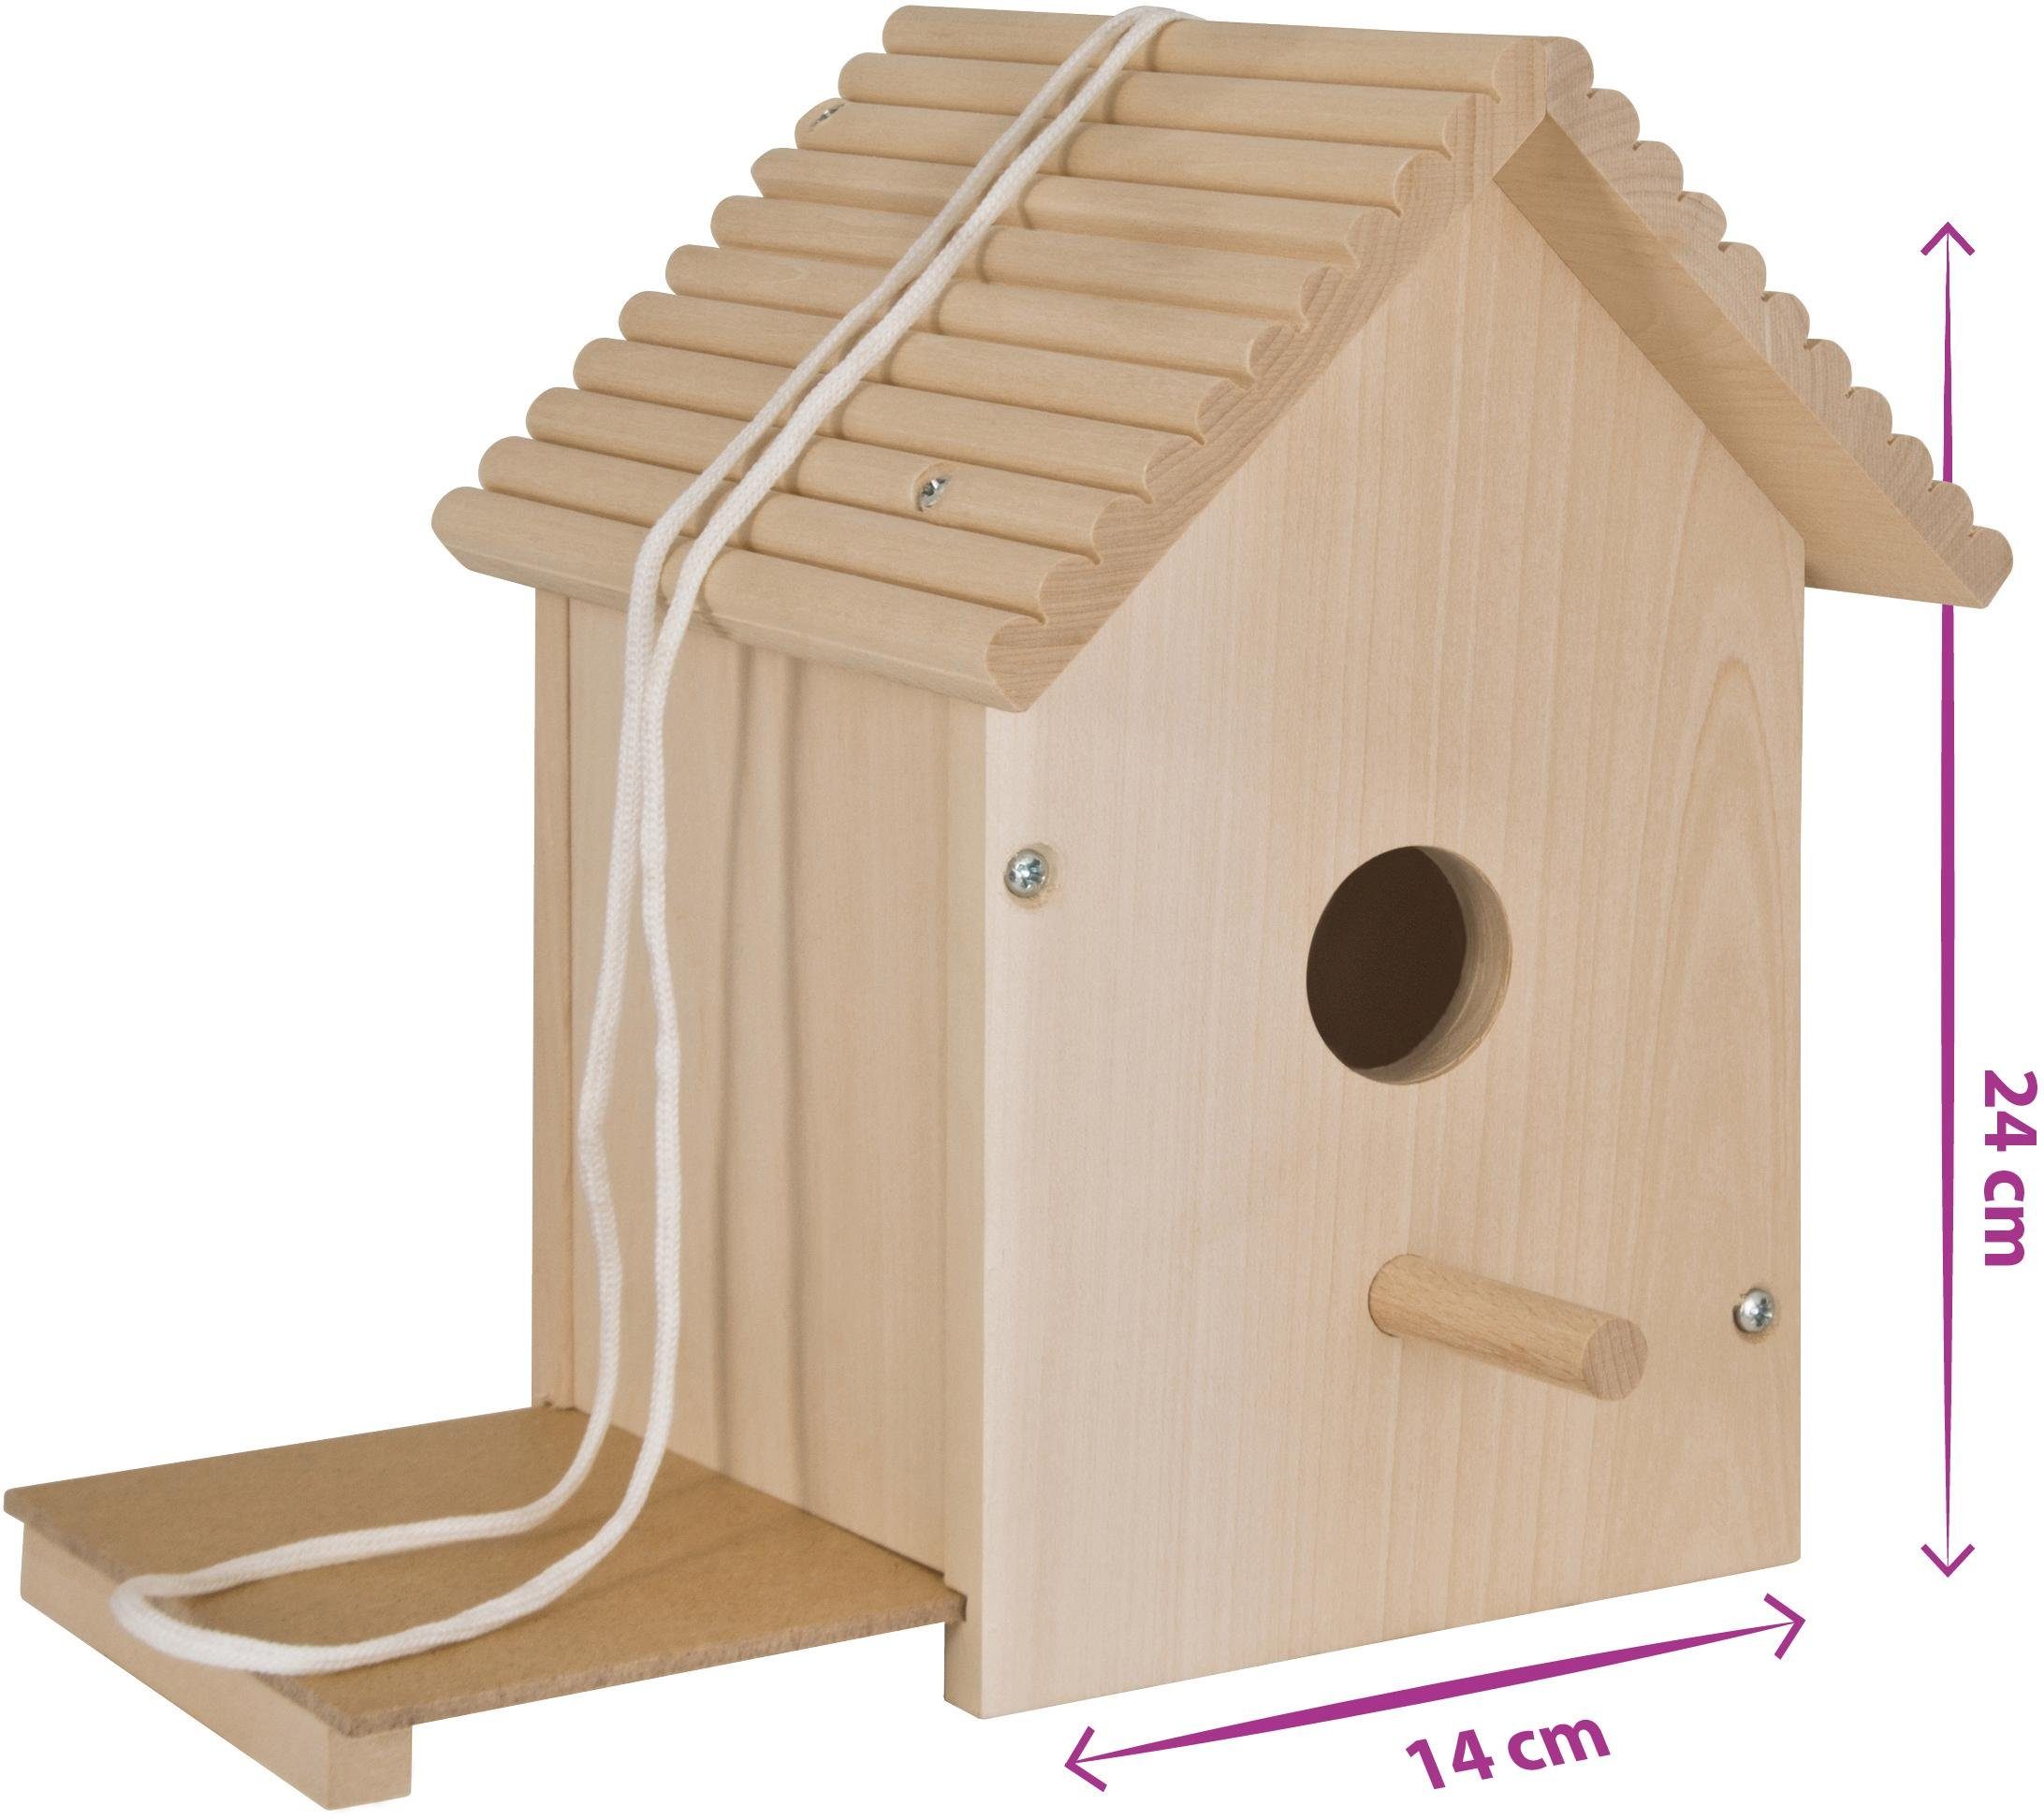 Eichhorn Kreativset Outdoor Zusammenbauen Holzspielzeug, in Europe Vogelhaus, Zum Bemalen; und (Set), Made